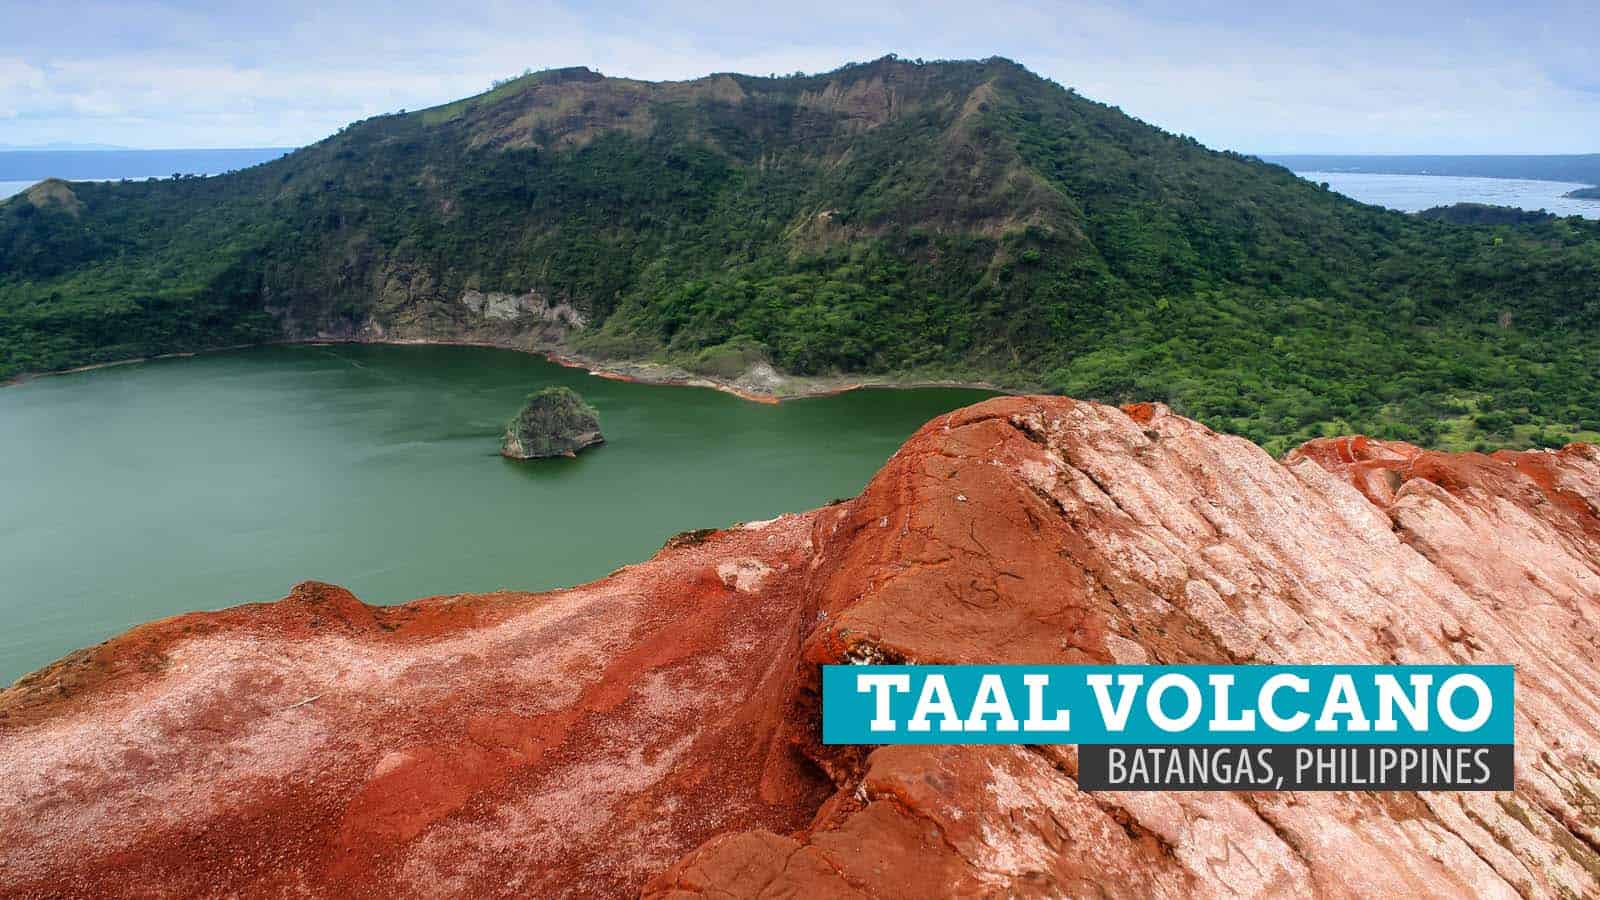 Taal火山口:长途跋涉到菲律宾八丹加斯的炽热内脏